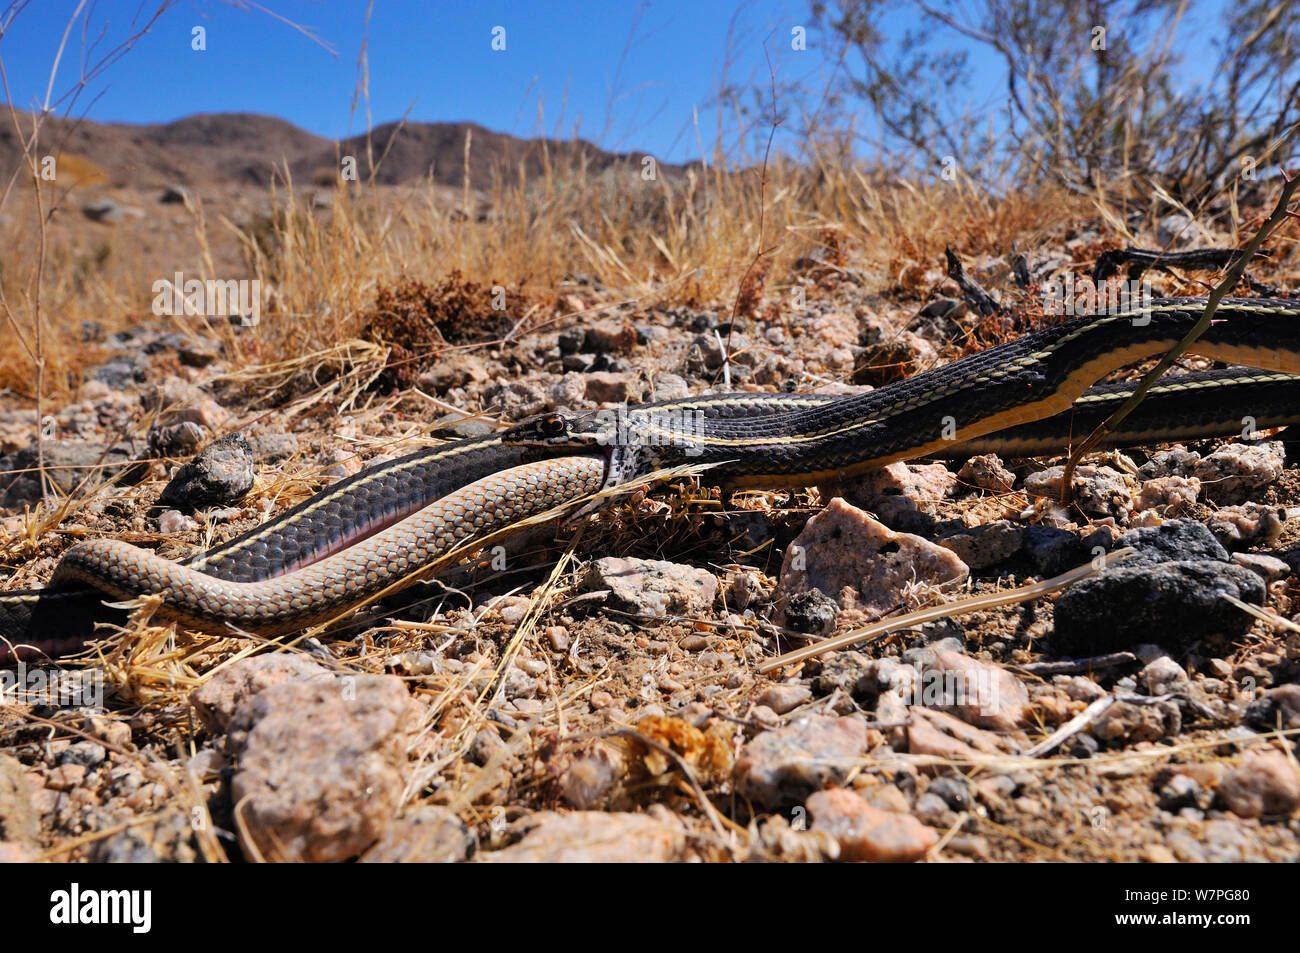 Californie dépouillé Racer (Masticophis lateralis) manger une Patch-Nosed hexalepis Serpent (Salvadora) Joshua Tree National Monument, California, USA, mai. Conditions contrôlées Banque D'Images